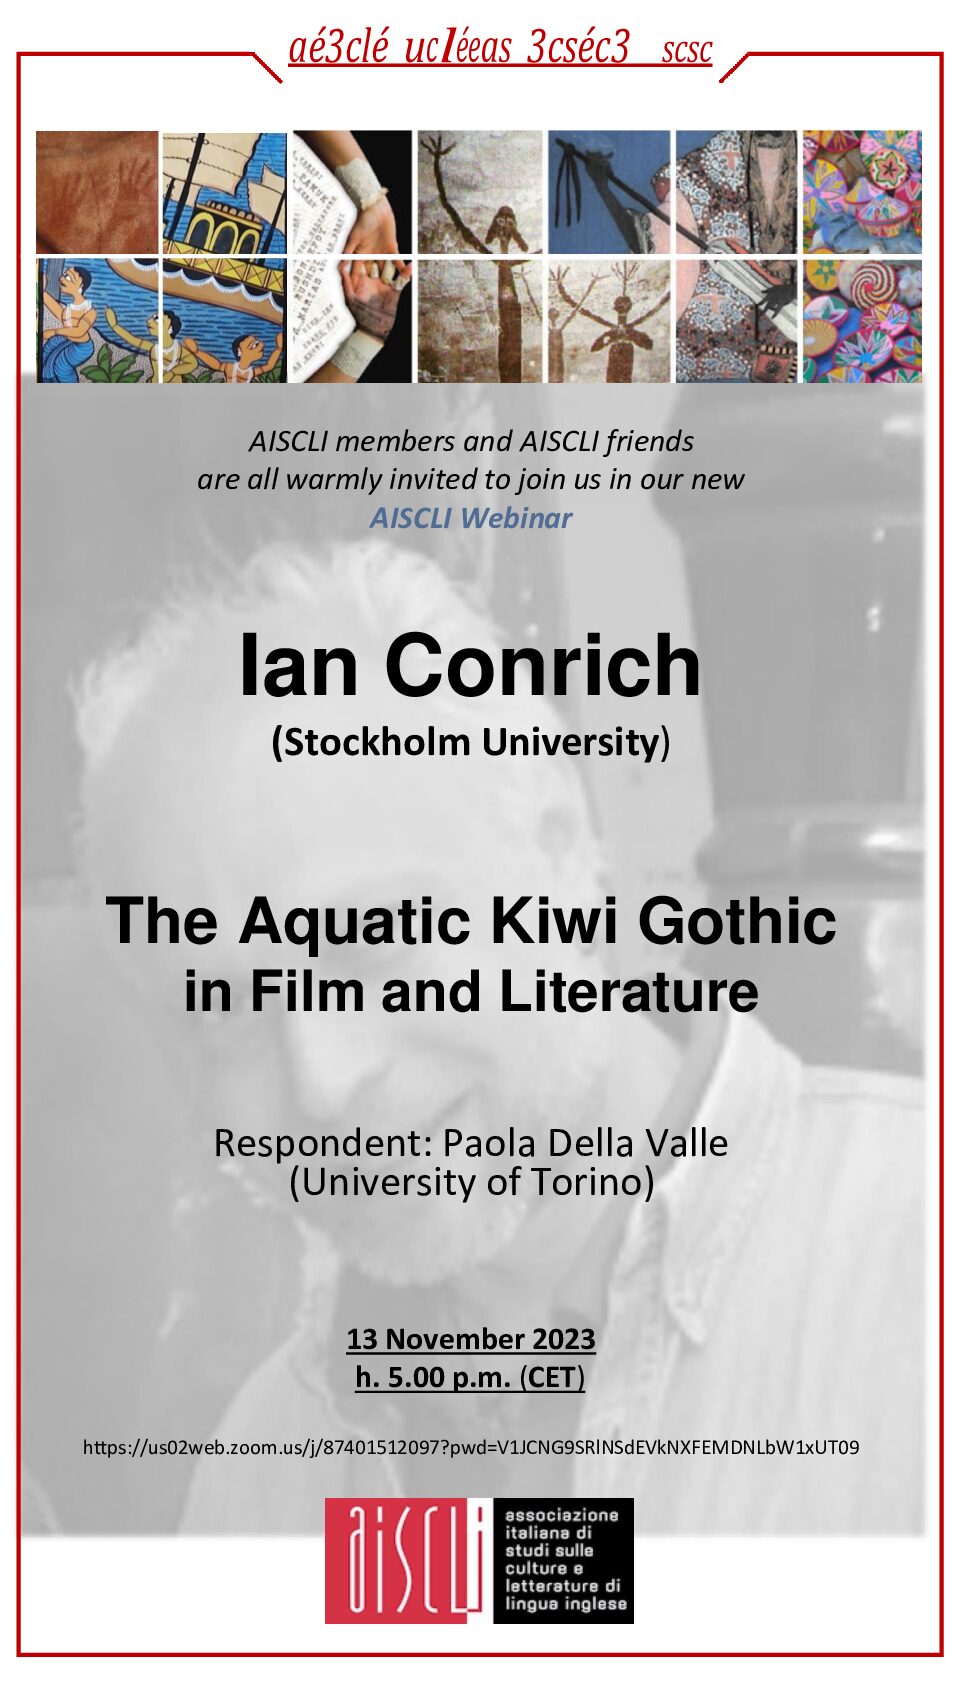 AISCLI WEBINAR SERIES 2023 . IAN CONRICH: The Aquatic Kiwi Gothic in Film and Literature. Respondent Paola Della Valle